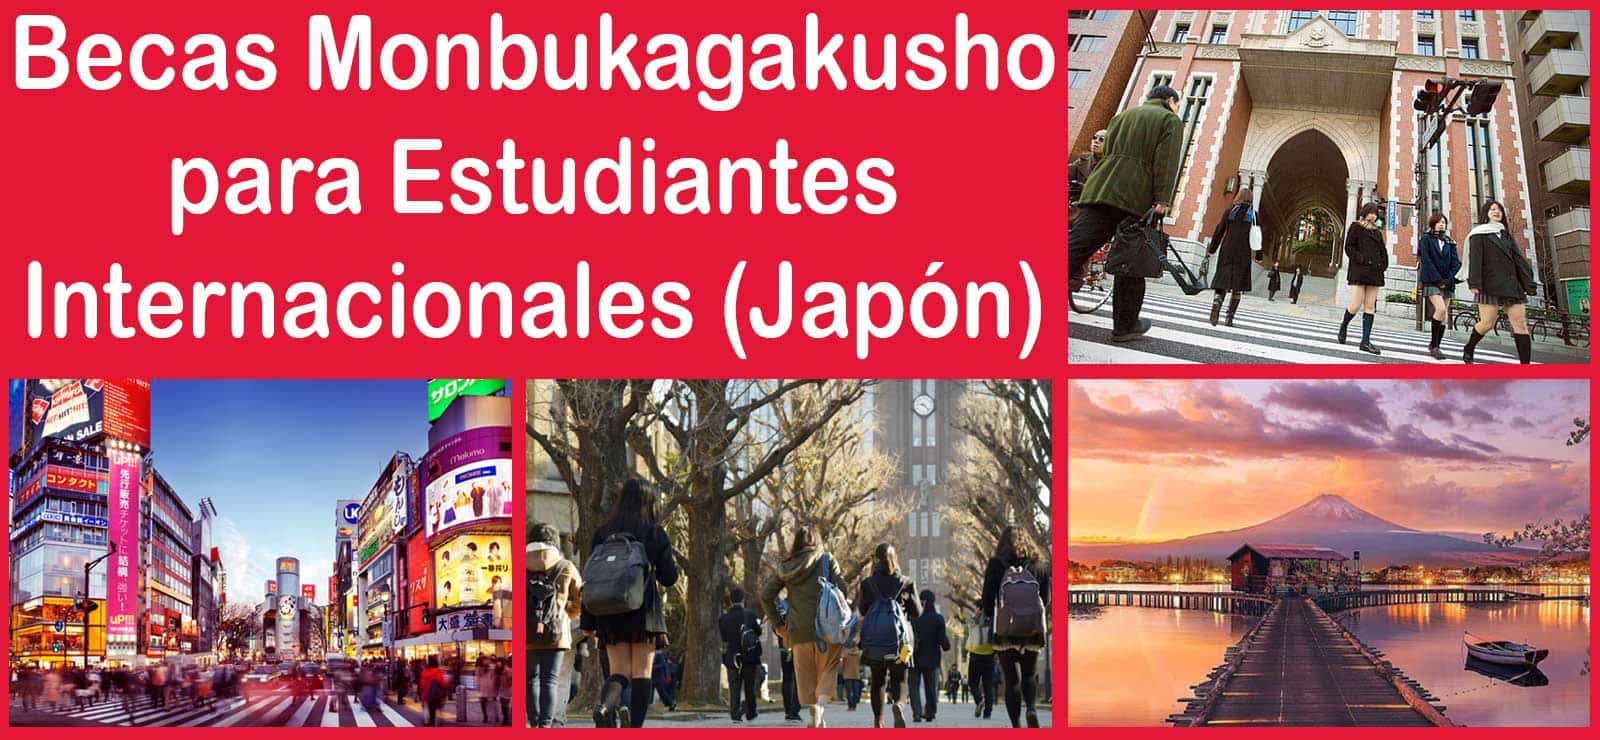 Becas Monbukagakusho para Estudiantes Internacionales (Japón) | Estudia Gratis - Sitio Web Oficial - becas.org.es